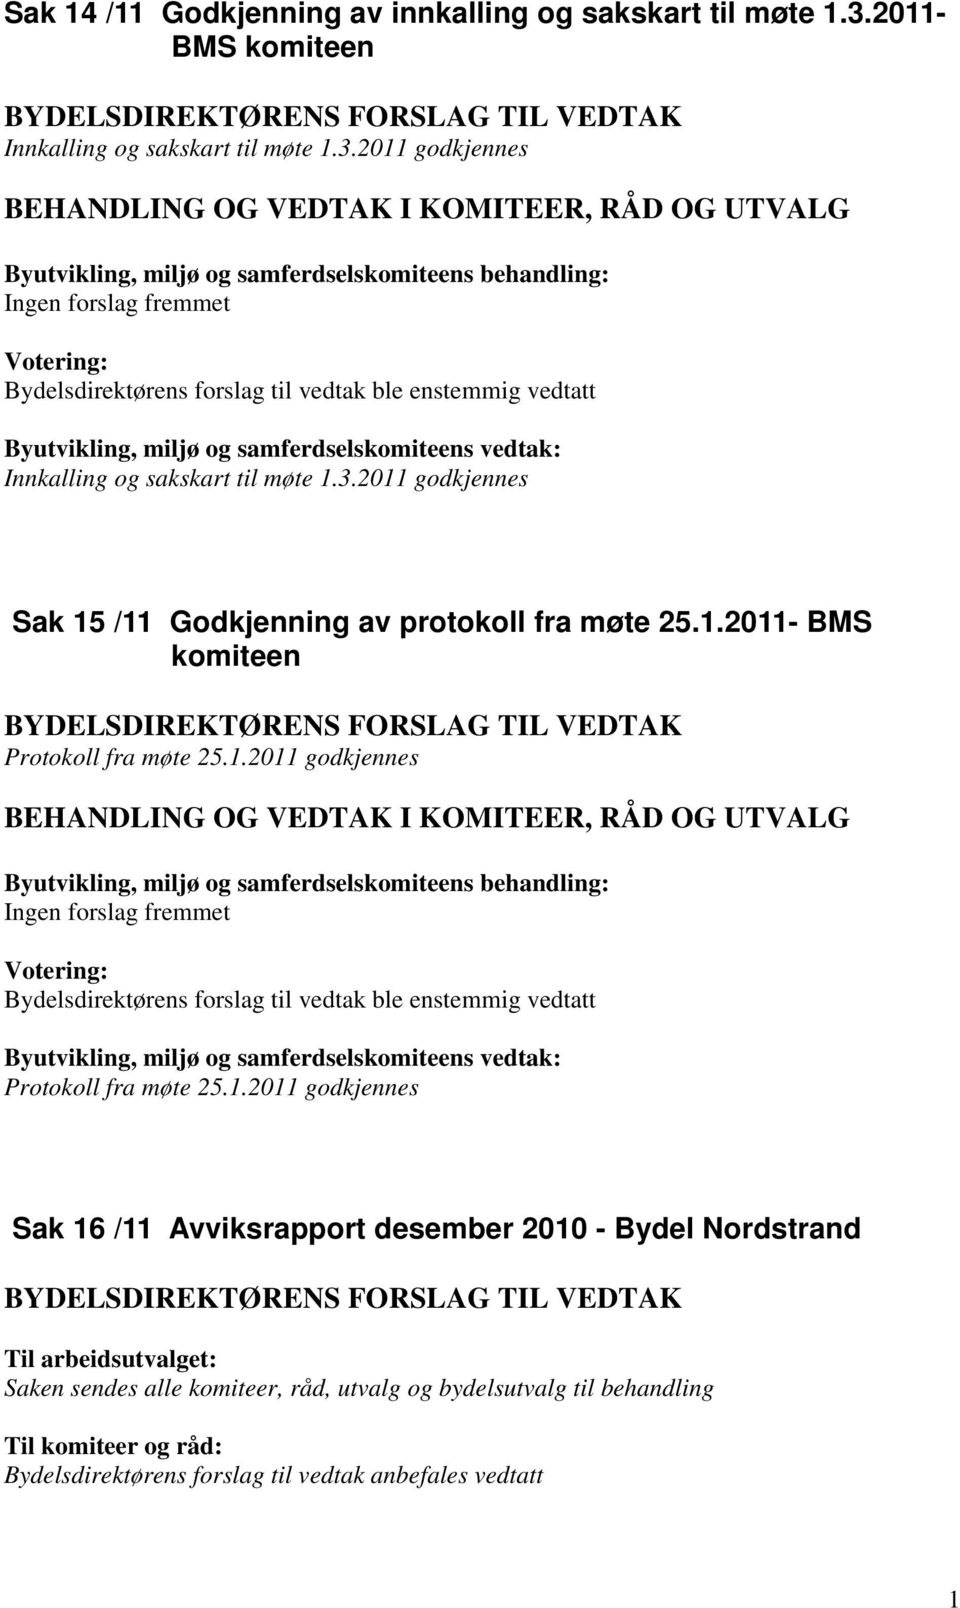 1.2011- BMS komiteen Protokoll fra møte 25.1.2011 godkjennes Protokoll fra møte 25.1.2011 godkjennes Sak 16 /11